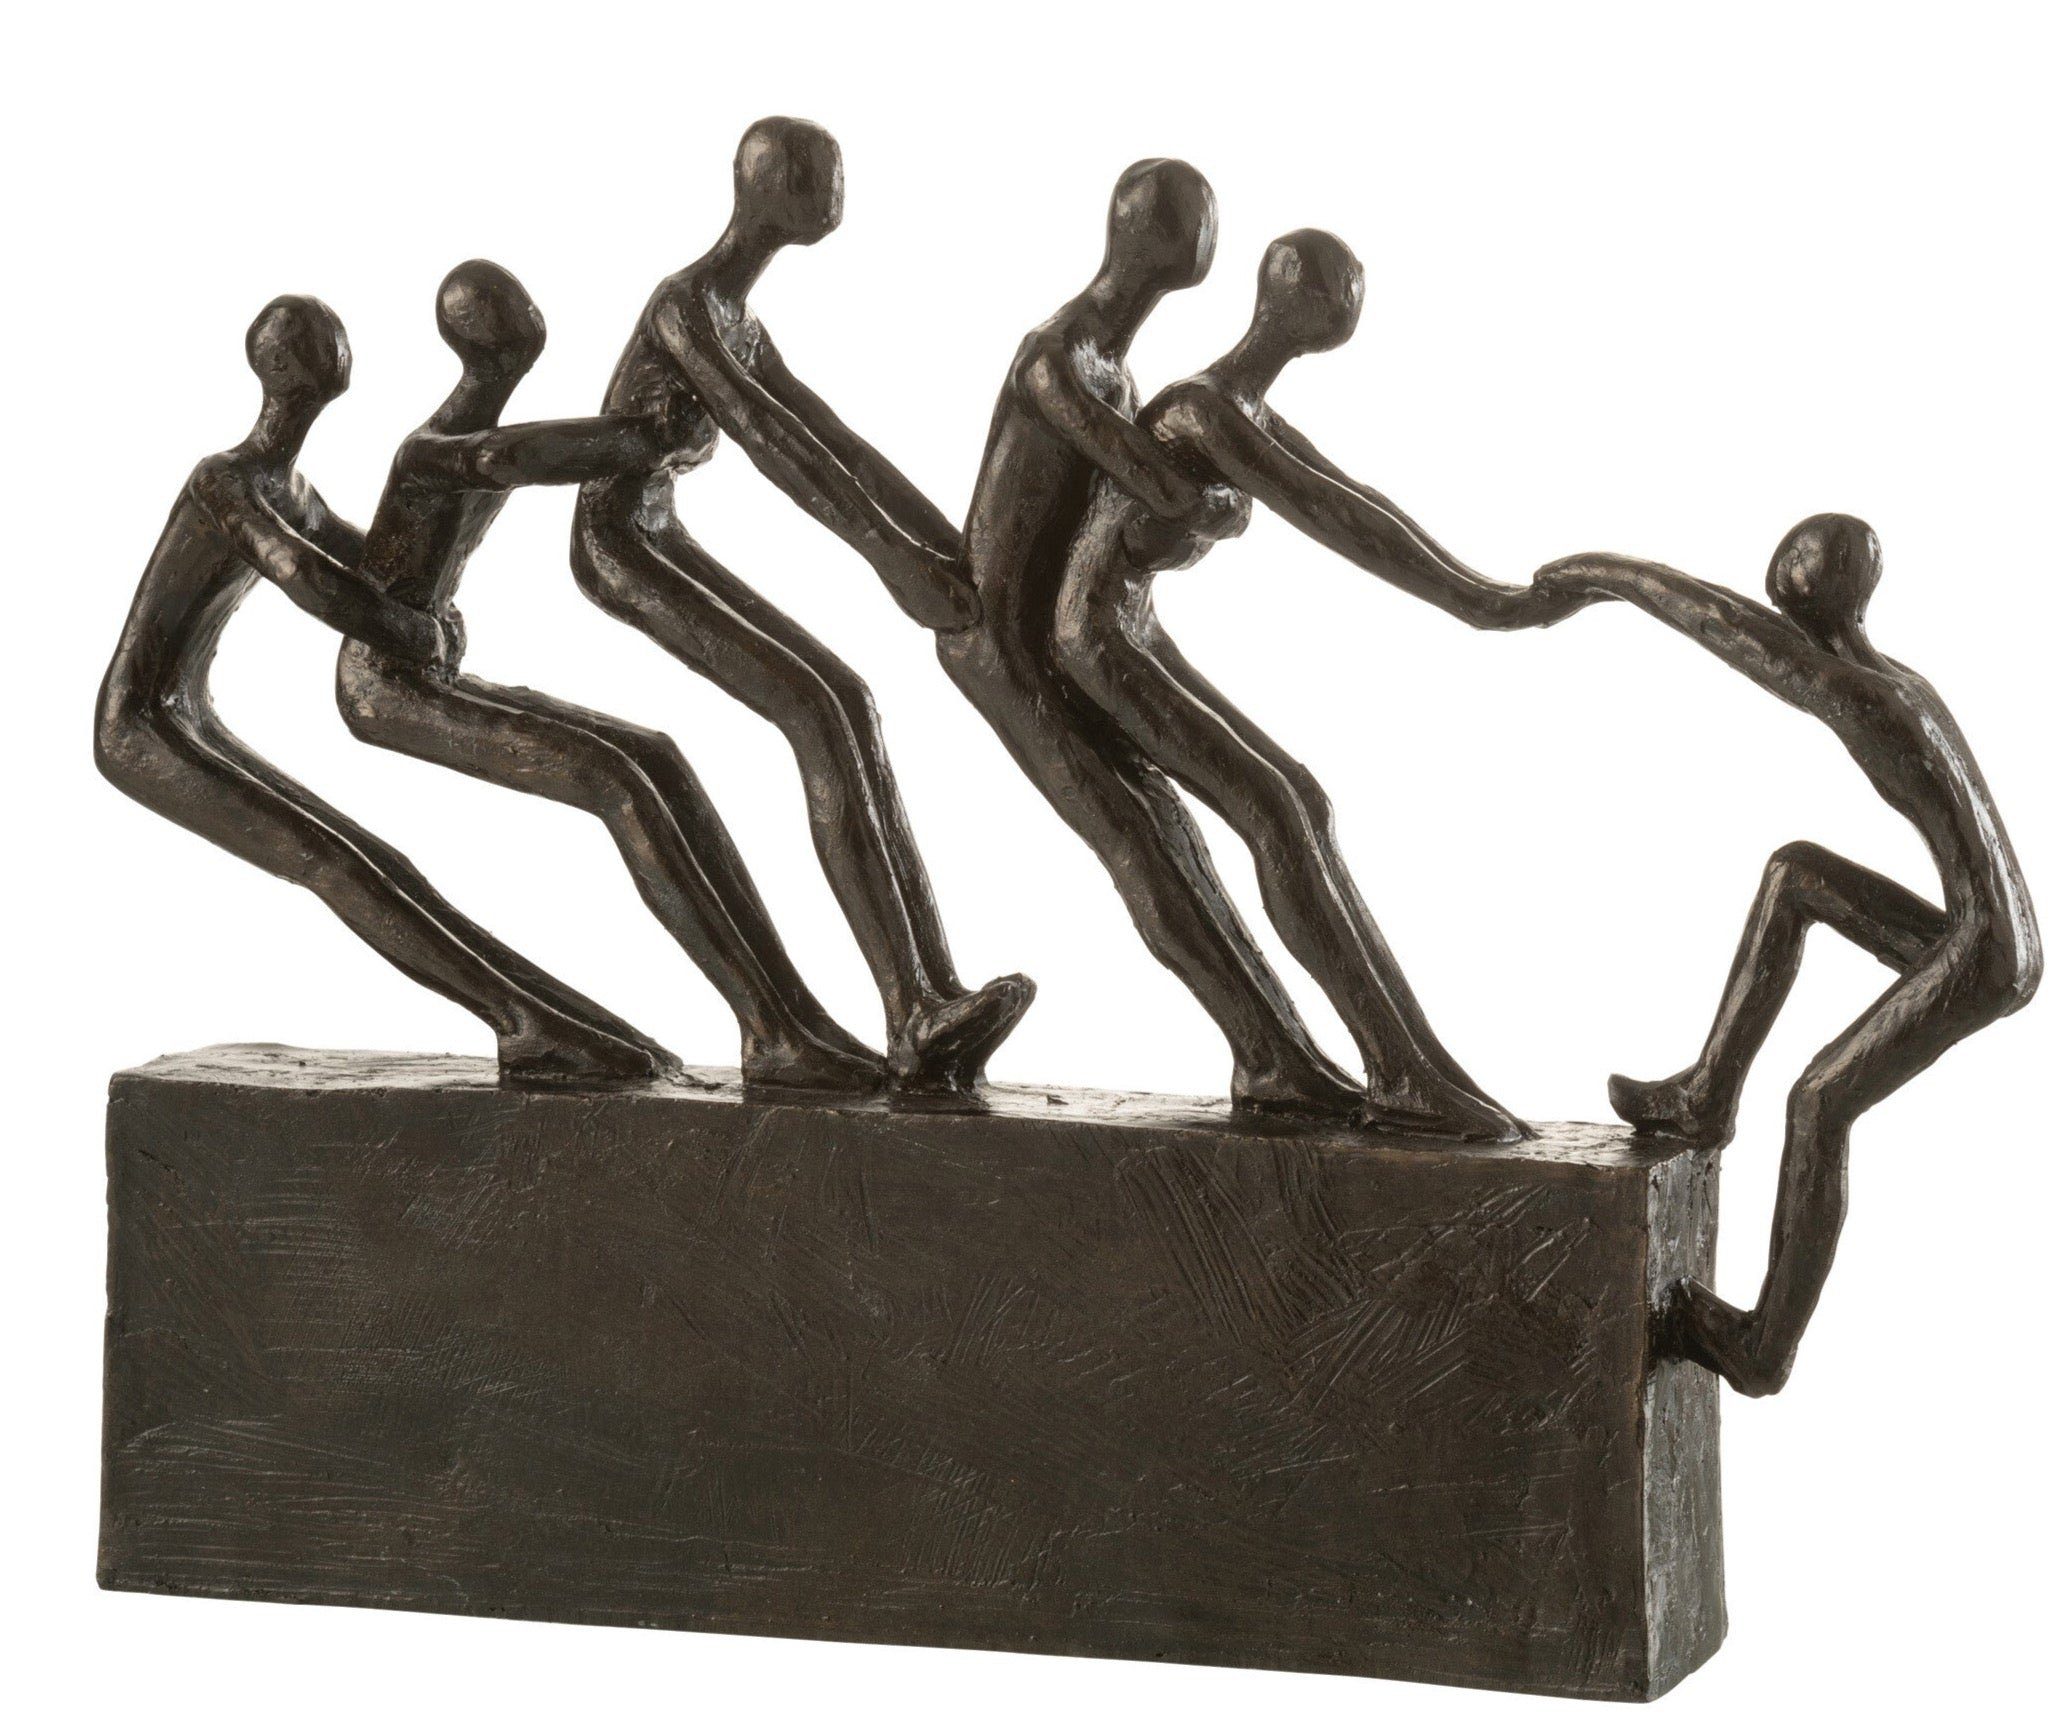 MF Skulptur freunde Dekorat Figur "Teamwork zusammen" Geschenkidee Dekoobjekt halten